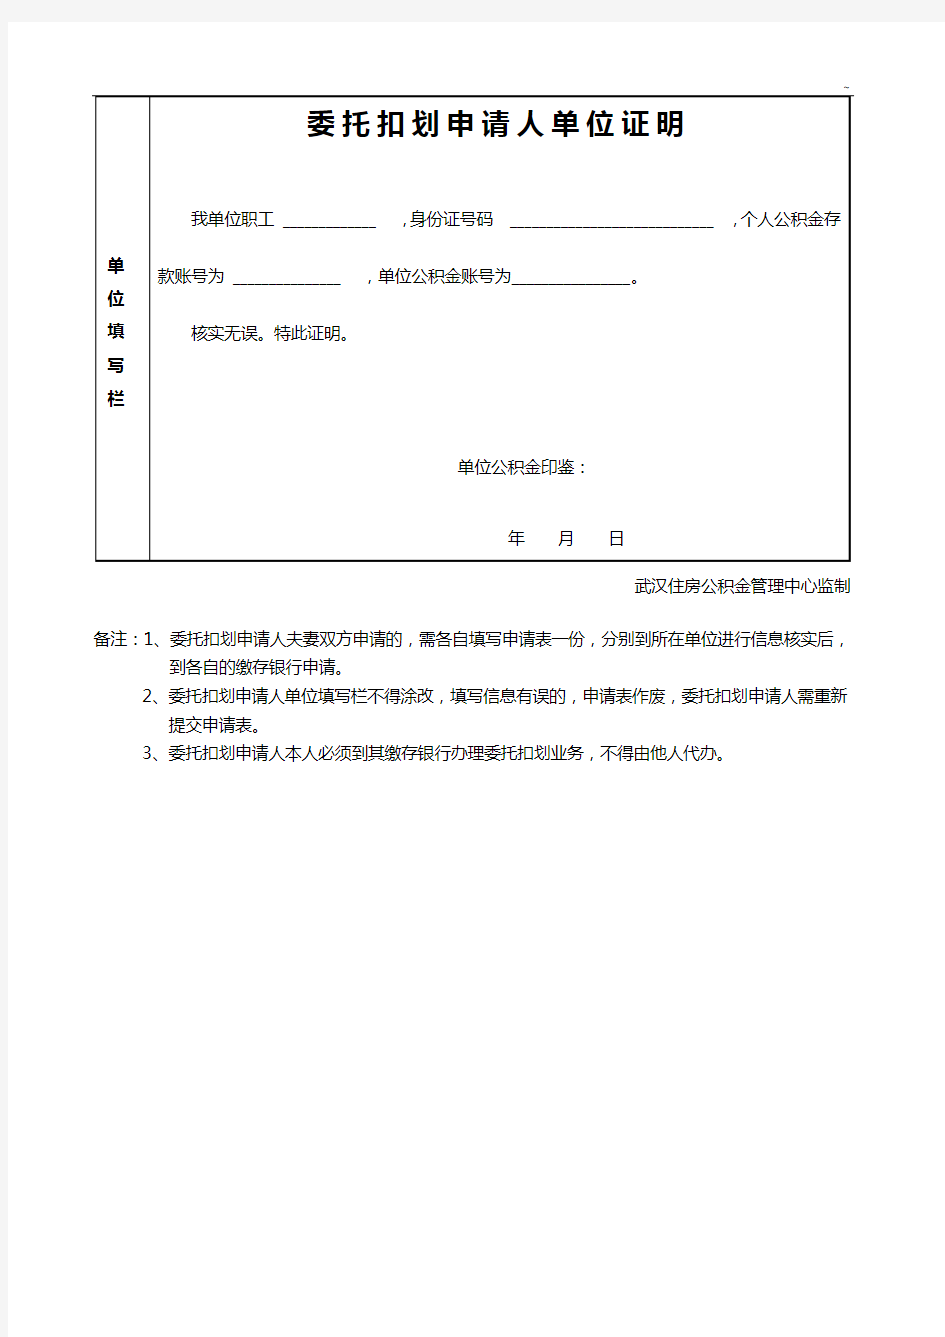 武汉市委托扣划住房公积金还公积金贷款申请表